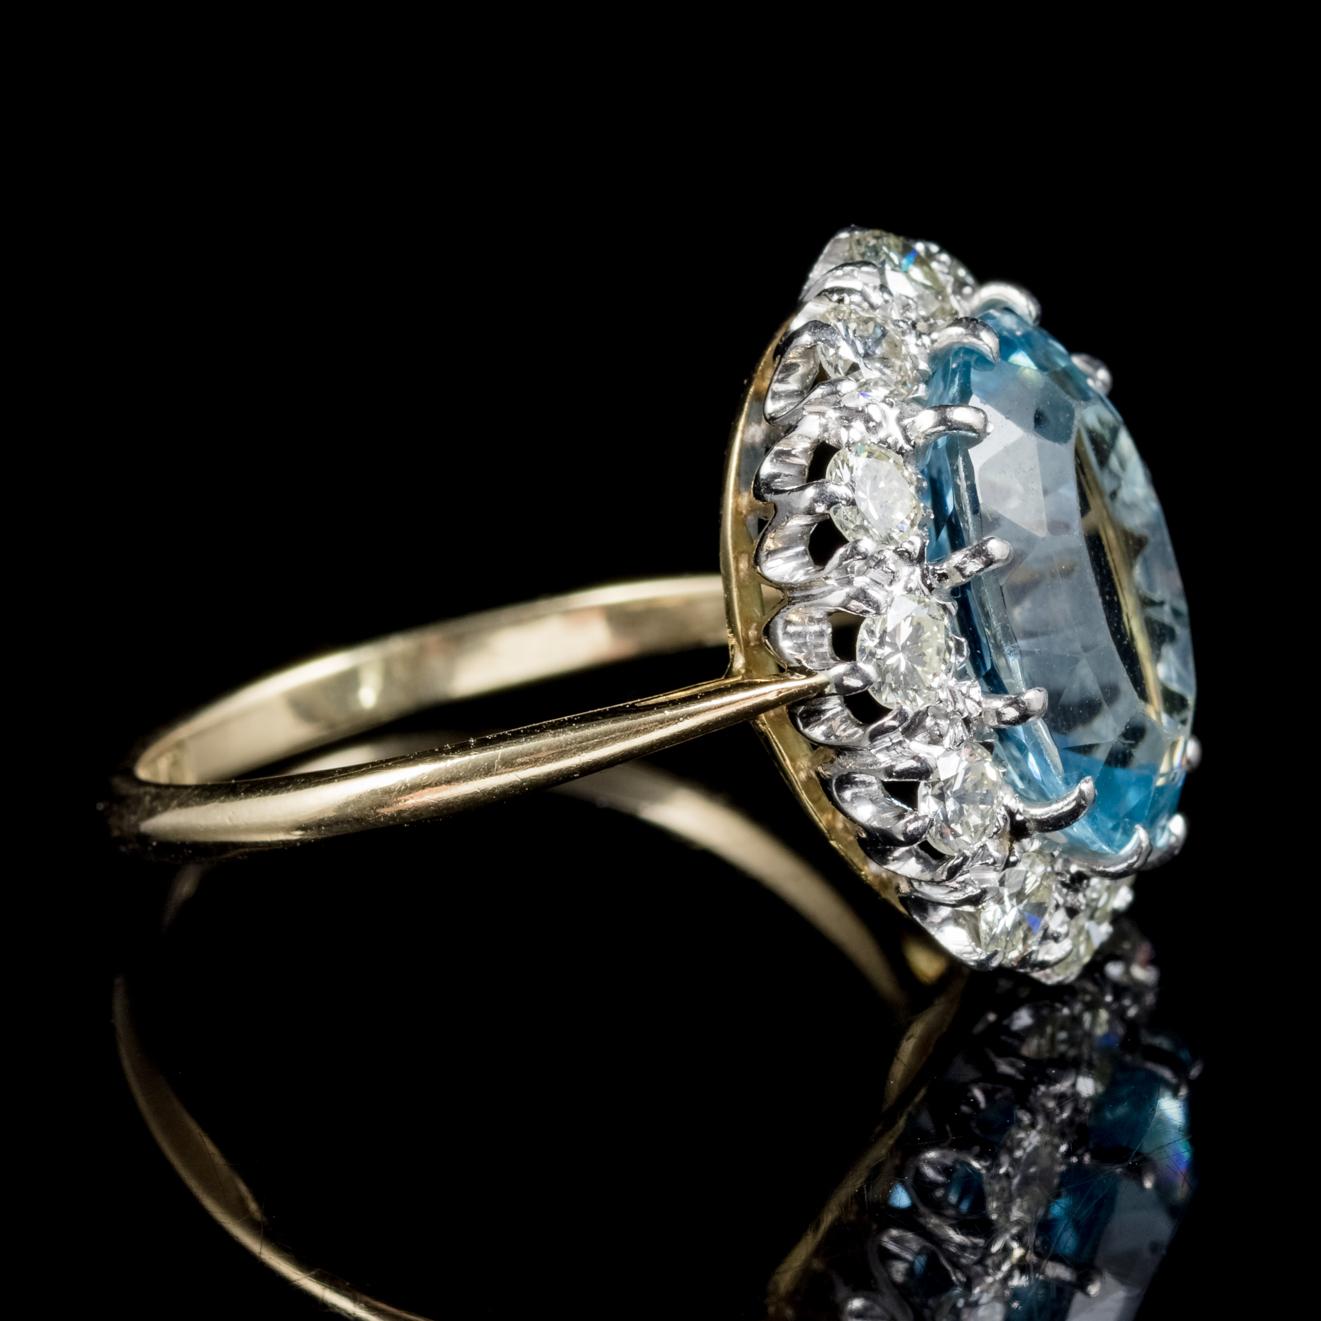 Women's Antique Victorian Aquamarine Diamond Ring 18 Carat Gold Platinum, circa 1900